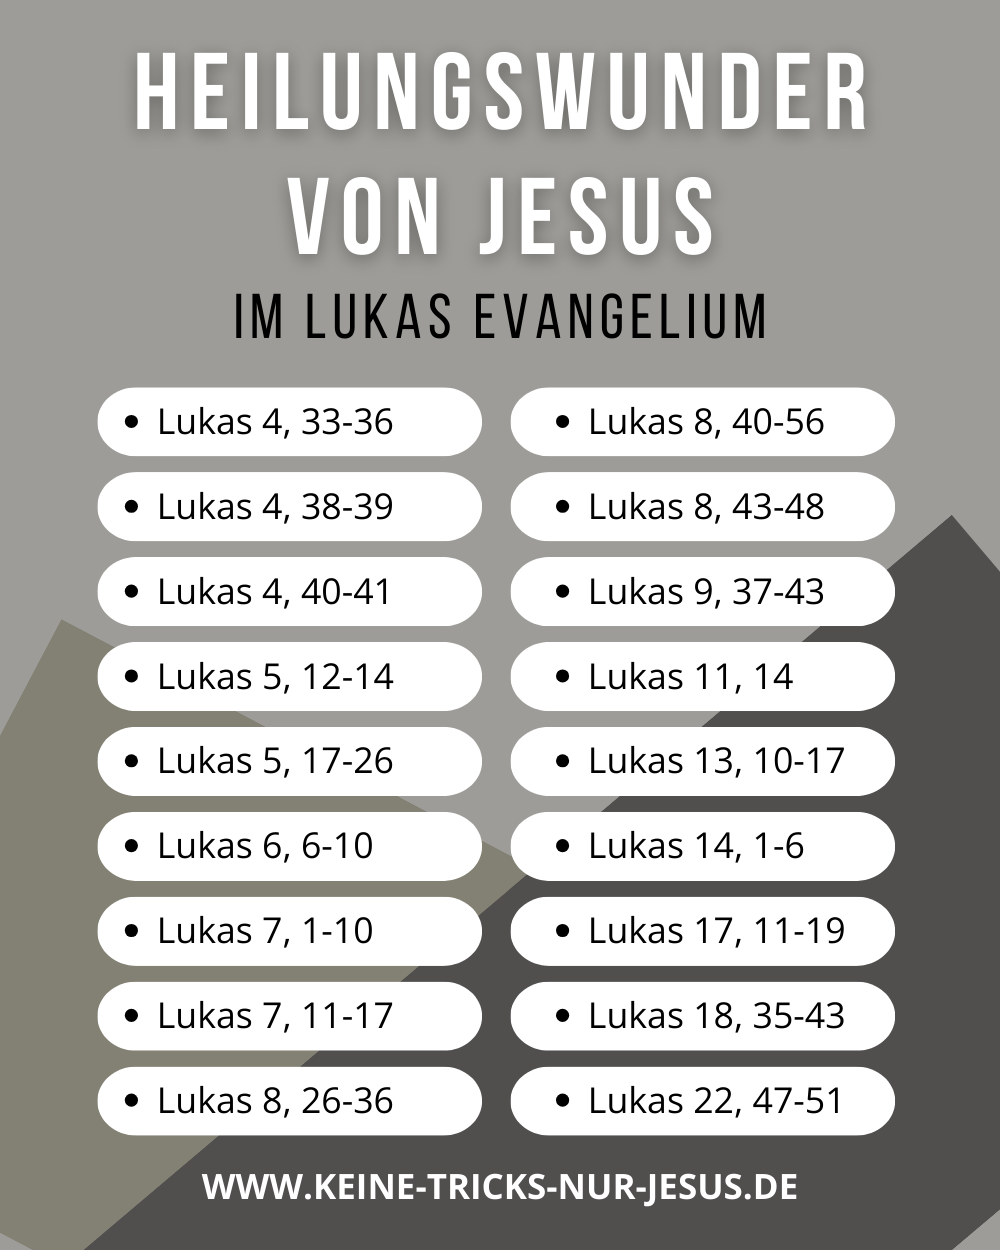 Lukas Evangelium - Heilungswunder